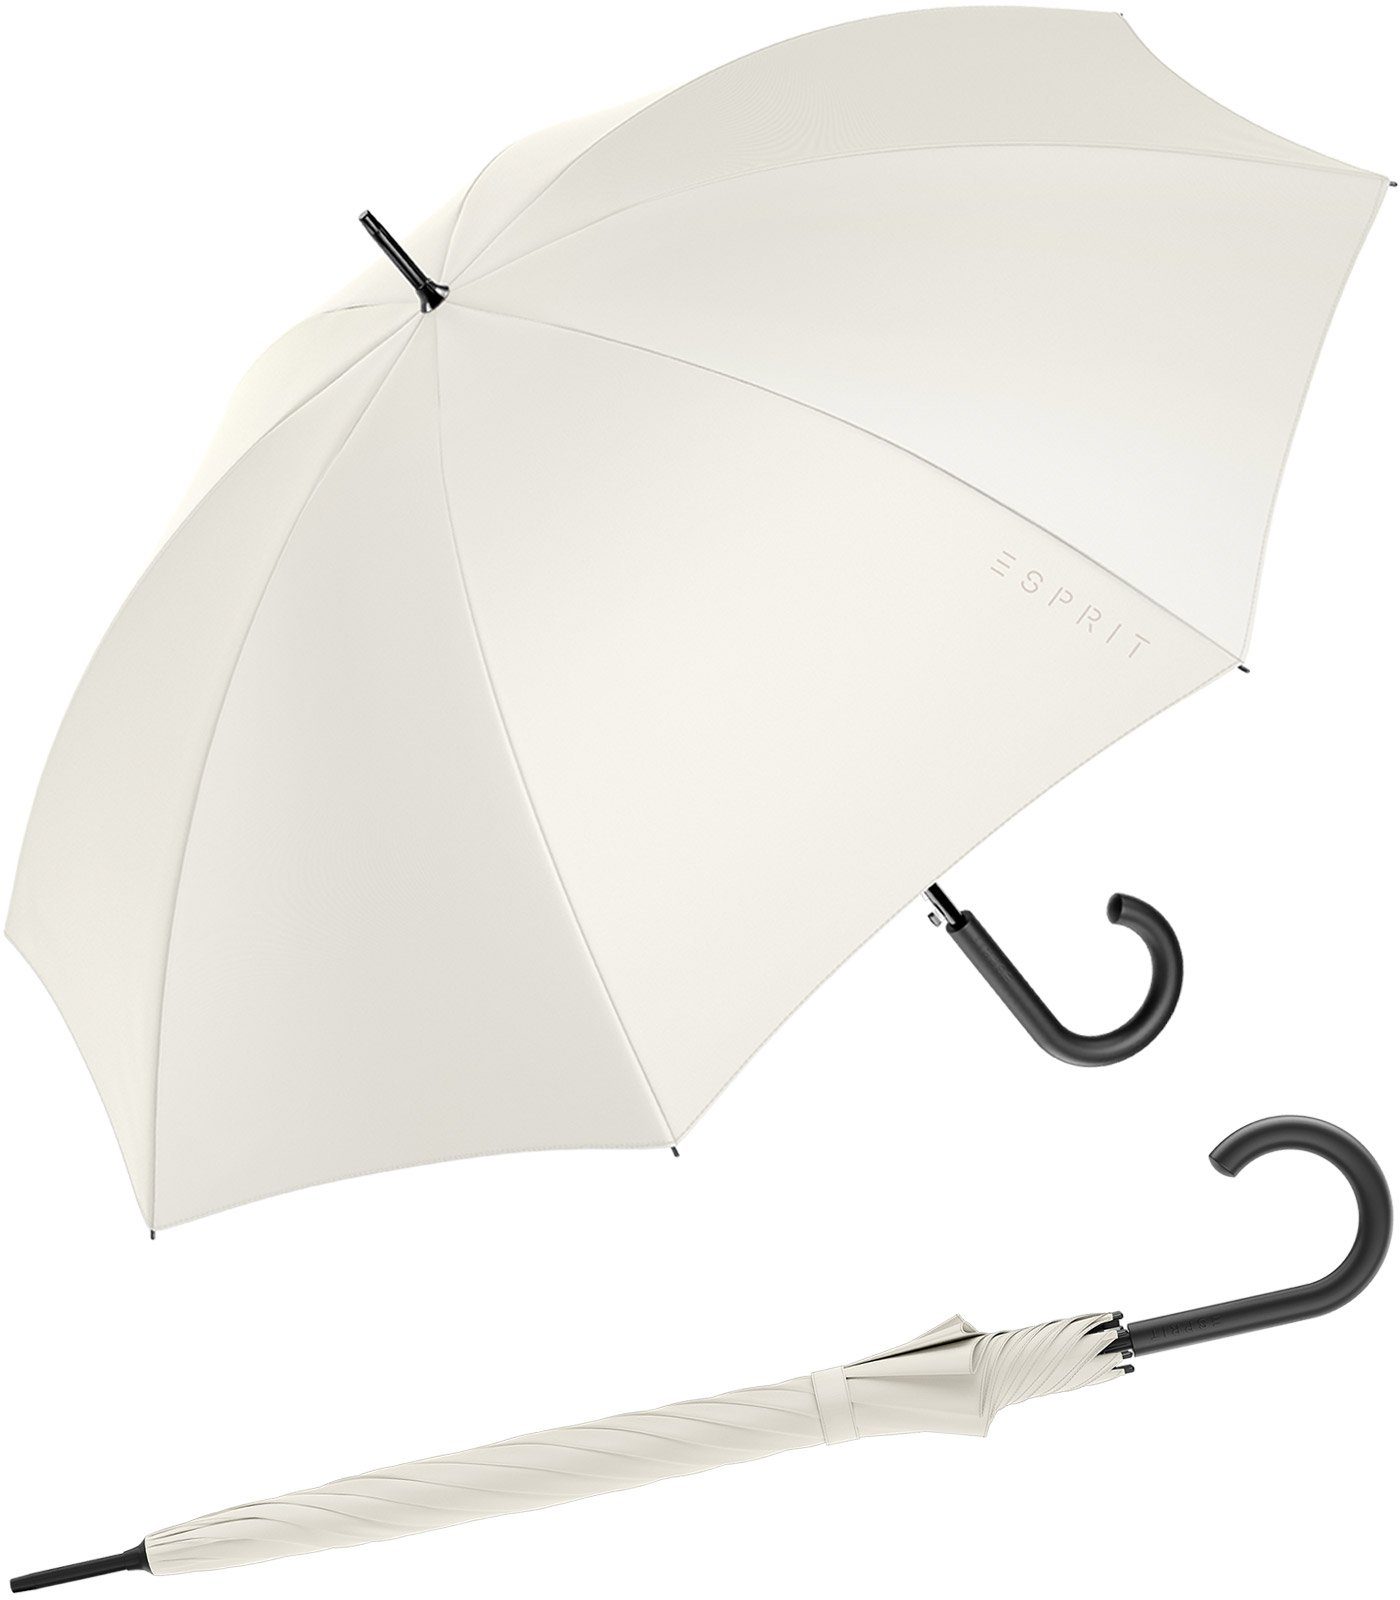 Damen-Regenschirm 2022, ivory groß Esprit Stockregenschirm in den und Trendfarben FJ mit stabil, Automatik